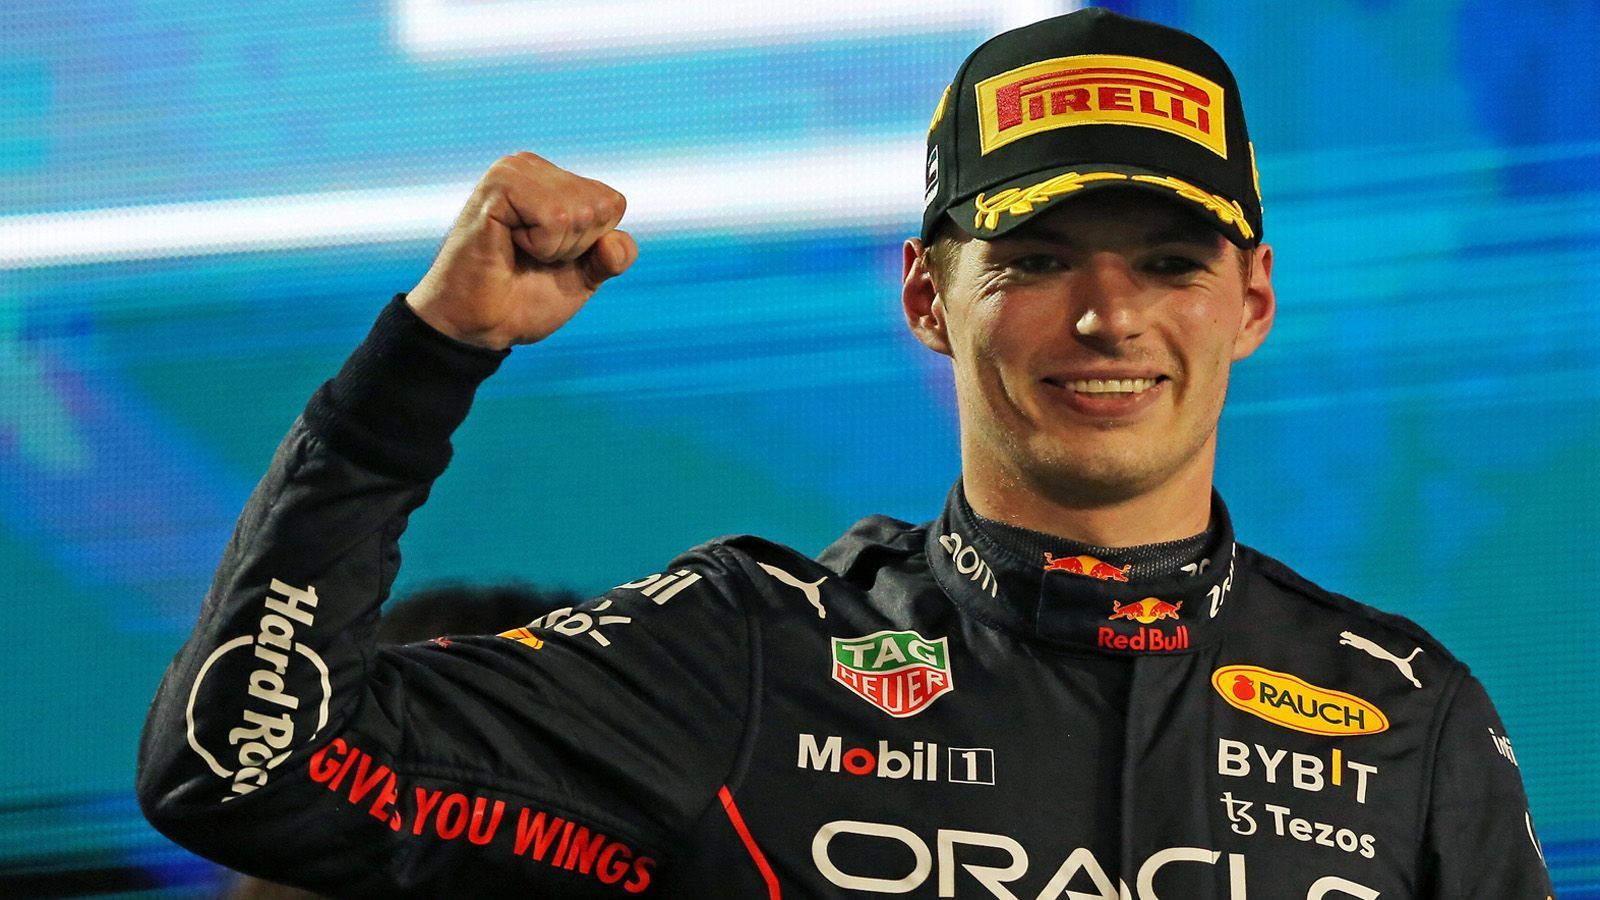 
                <strong>Gewinner: Max Verstappen und Red Bull</strong><br>
                Max Verstappen und Red Bull haben die Saison 2022 dominiert. Mit 15 Siegen in einem Jahr stellte der Niederländer einen neuen Rekord auf. Nachdem der Niederländer in zwei der ersten drei Rennen ausgefallen war, zog er nahezu konkurrenzlos davon. Der Red Bull war nicht nur schnell, sondern auch verlässlich. Der Doppel-Weltmeister bekam von seinem Team einen Wagen gestellt, der nach dem dritten Saisonrennen nie mehr ausfiel.
              